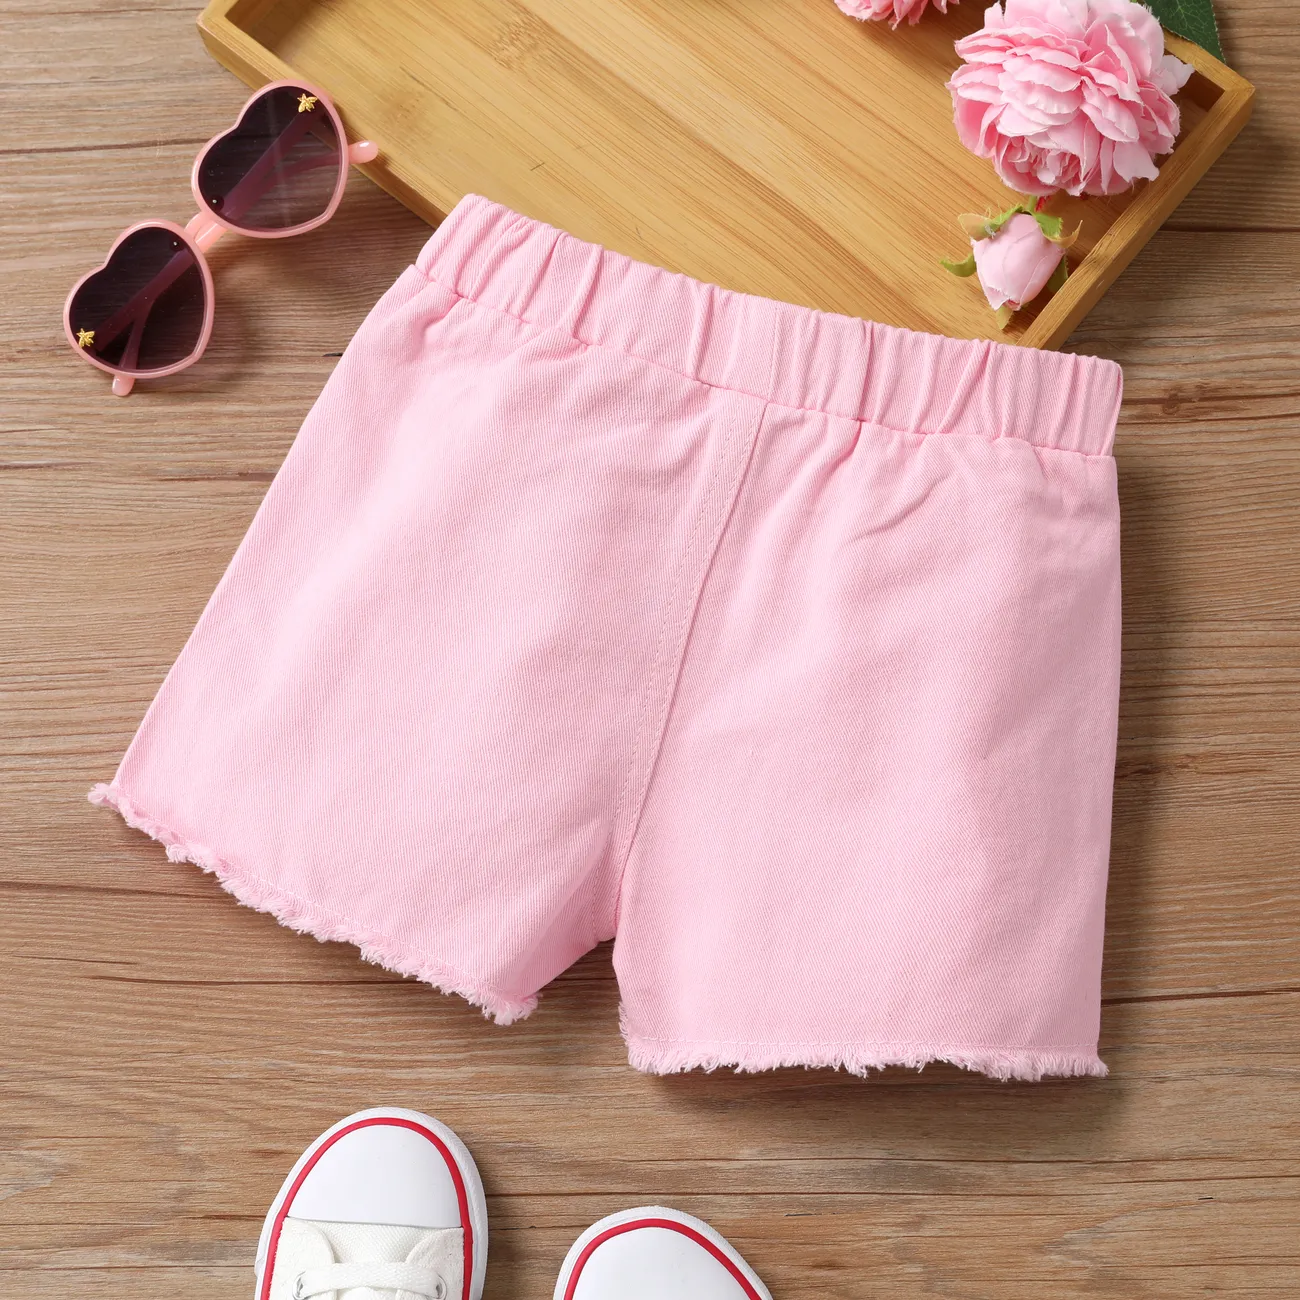 Toddler Girl Cotton Shorts Basic Solid Color Regular Shorts  Pink big image 1